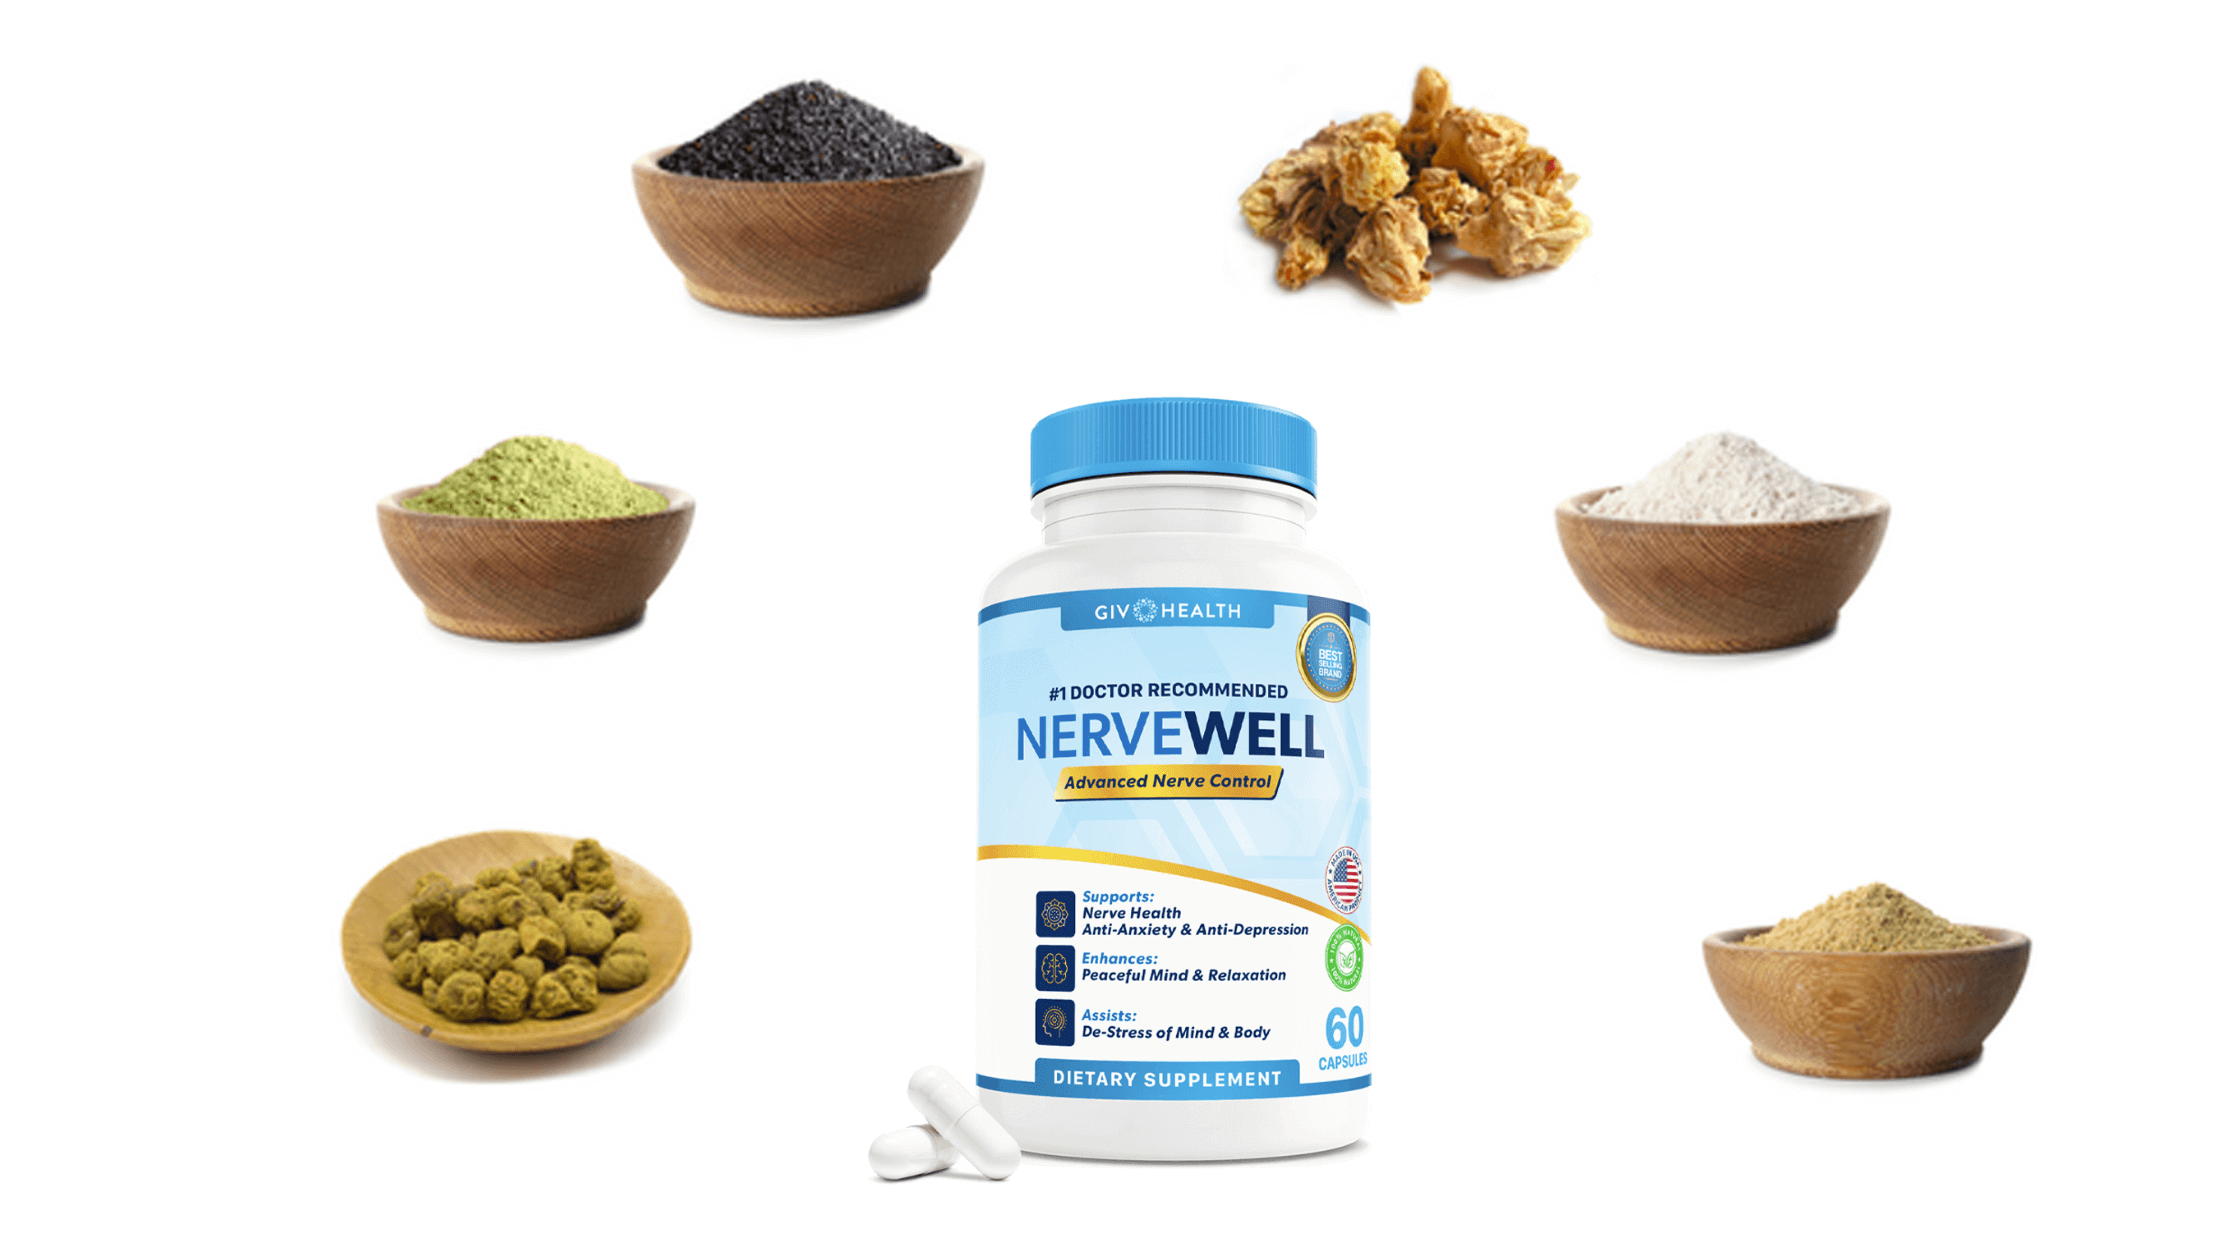 NerveWell Ingredients